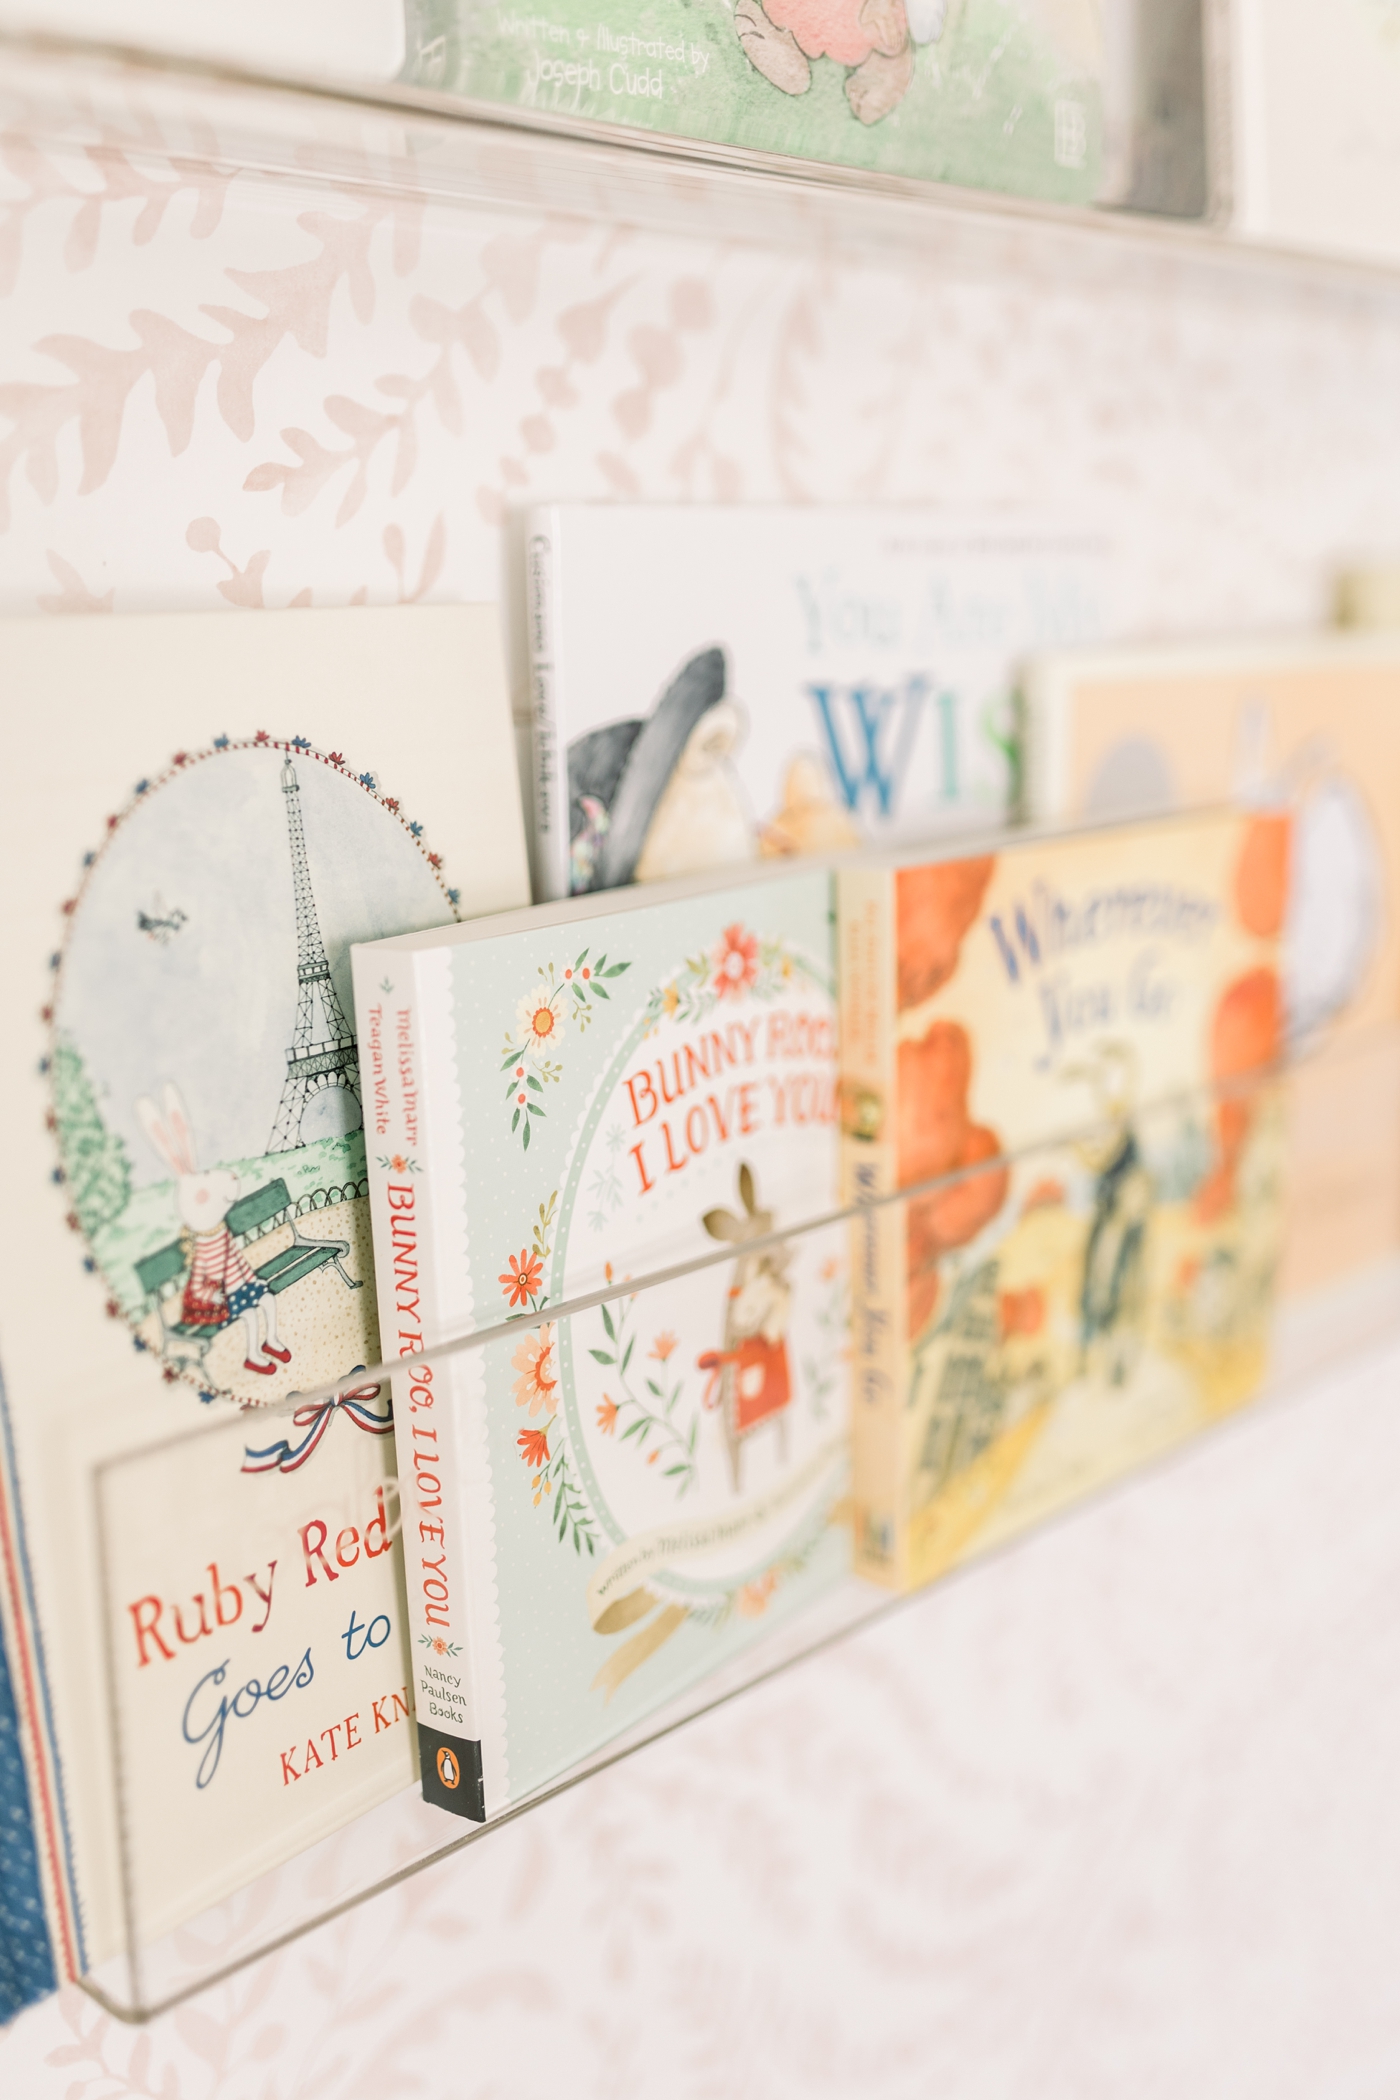 Books on an acrylic bookshelf in a nursery | Photo by Caitlyn Motycka Photography.